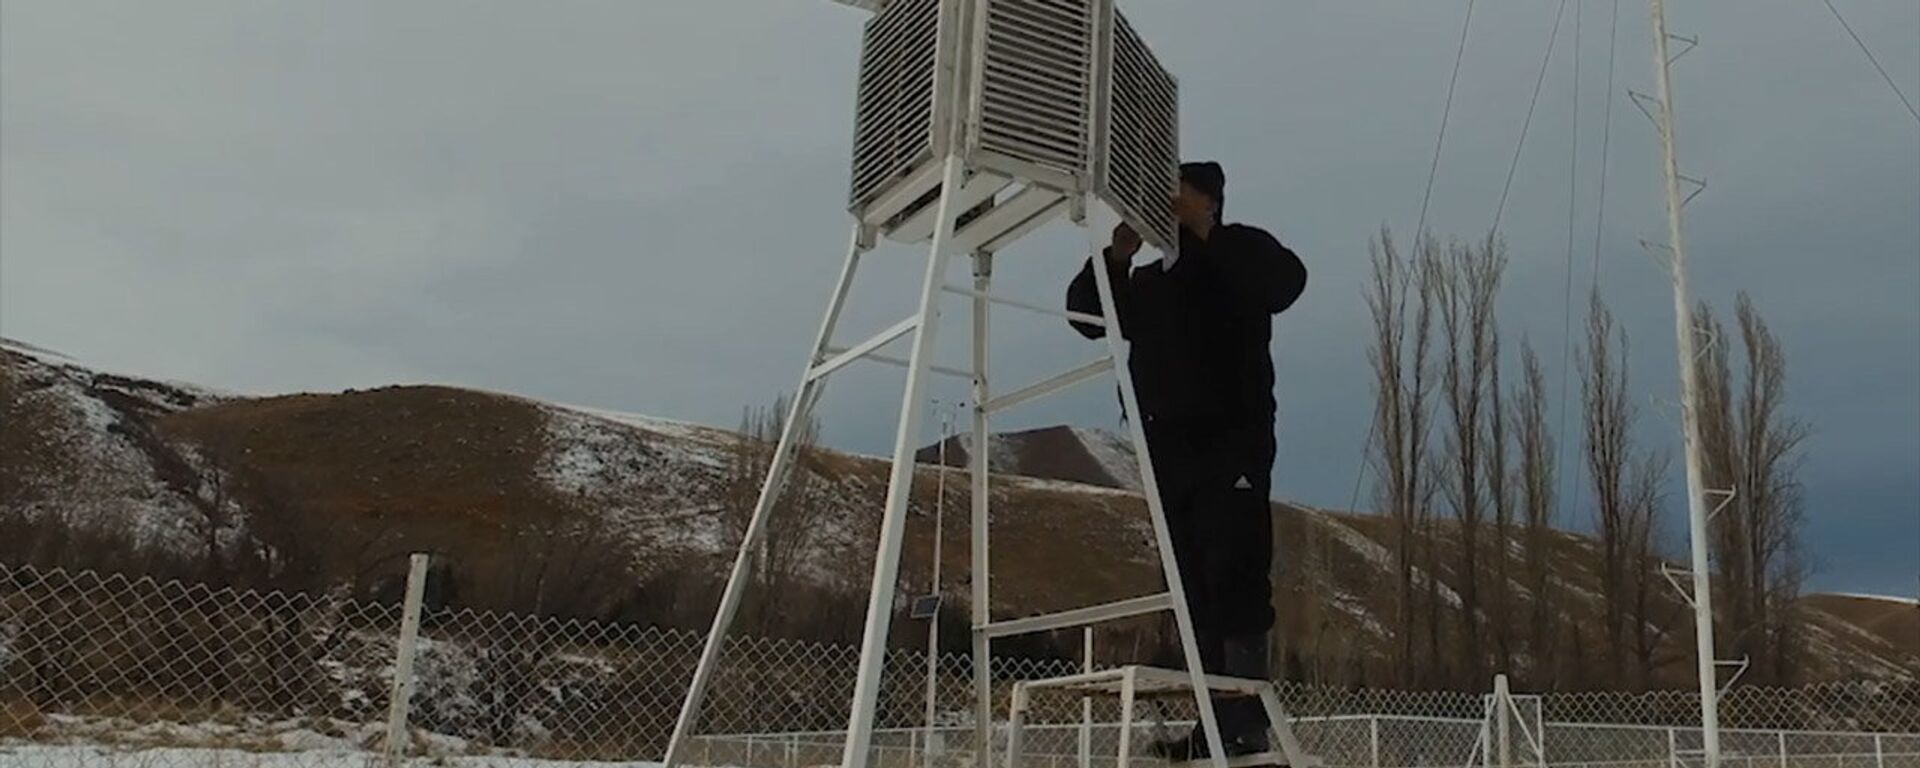 Как делается прогноз погоды в Кыргызстане. Объясним за 2 минуты — видео - Sputnik Кыргызстан, 1920, 05.01.2019